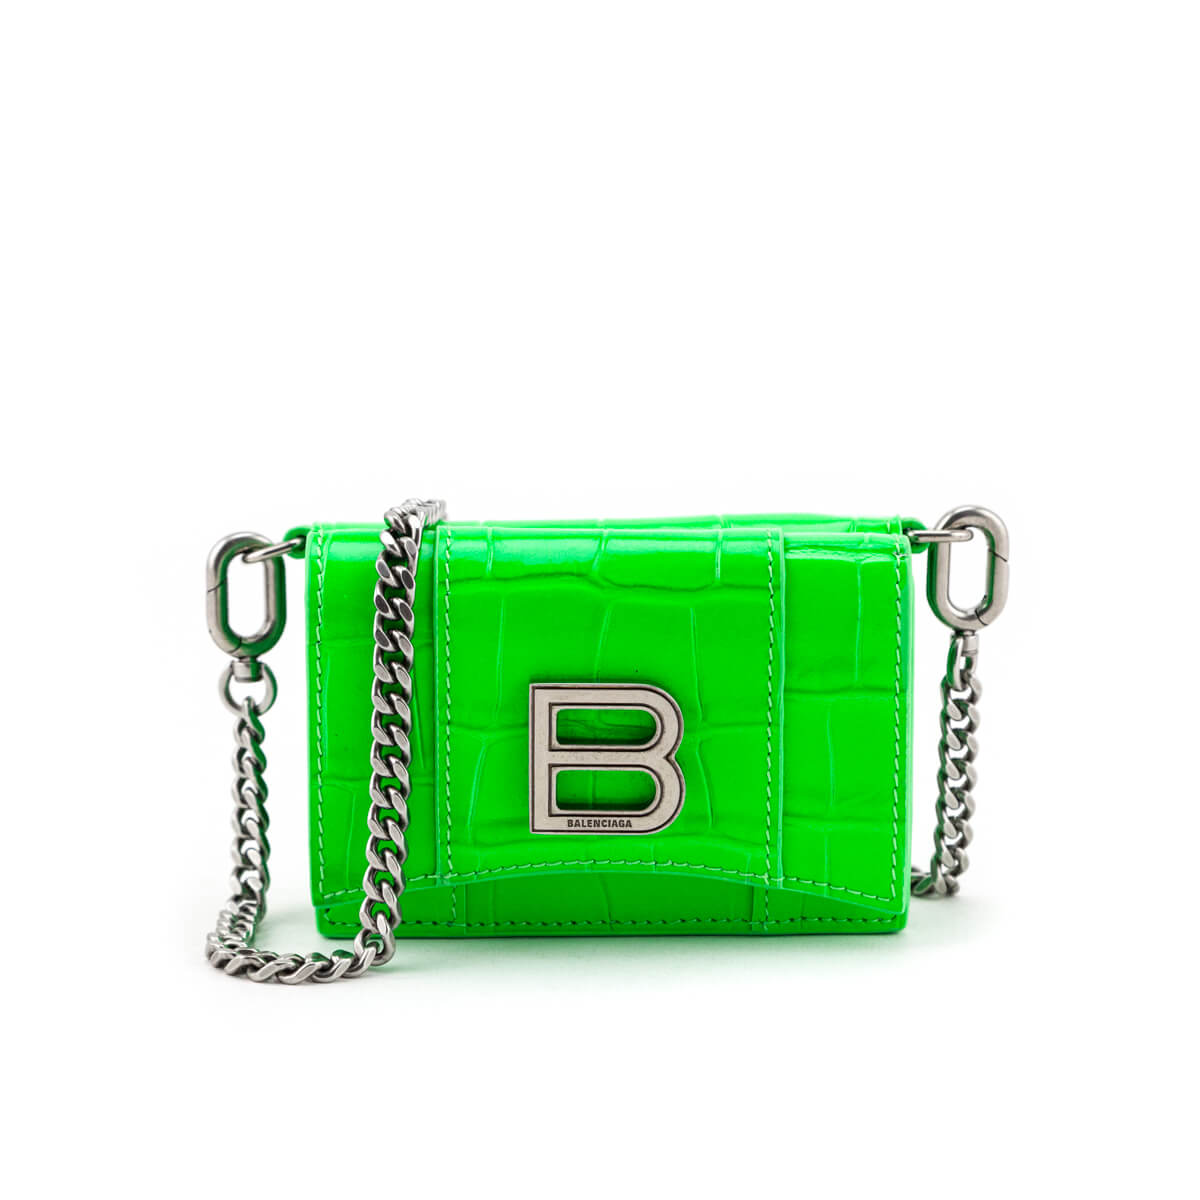 Trunk Chain Wallet - Luxury Shiny Crocodile Green